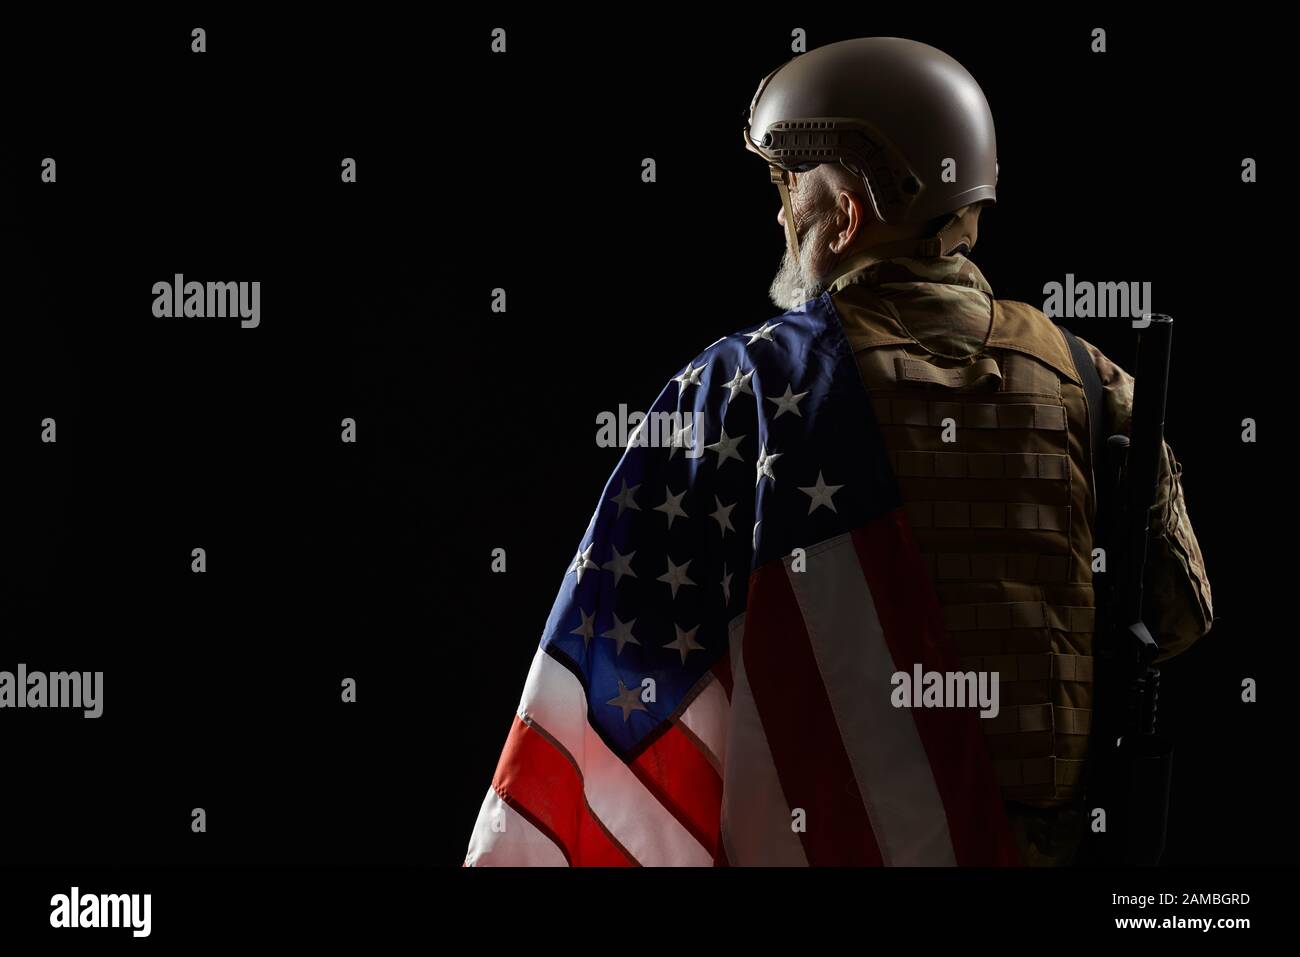 Vista posteriore del veterano militare americano con bandiera e fucile sulla spalla. Ritratto di vecchio ufficiale maschio in incognito in uniforme camuffata che posa in un'atmosfera scura. Concetto di militare, esercito. Foto Stock